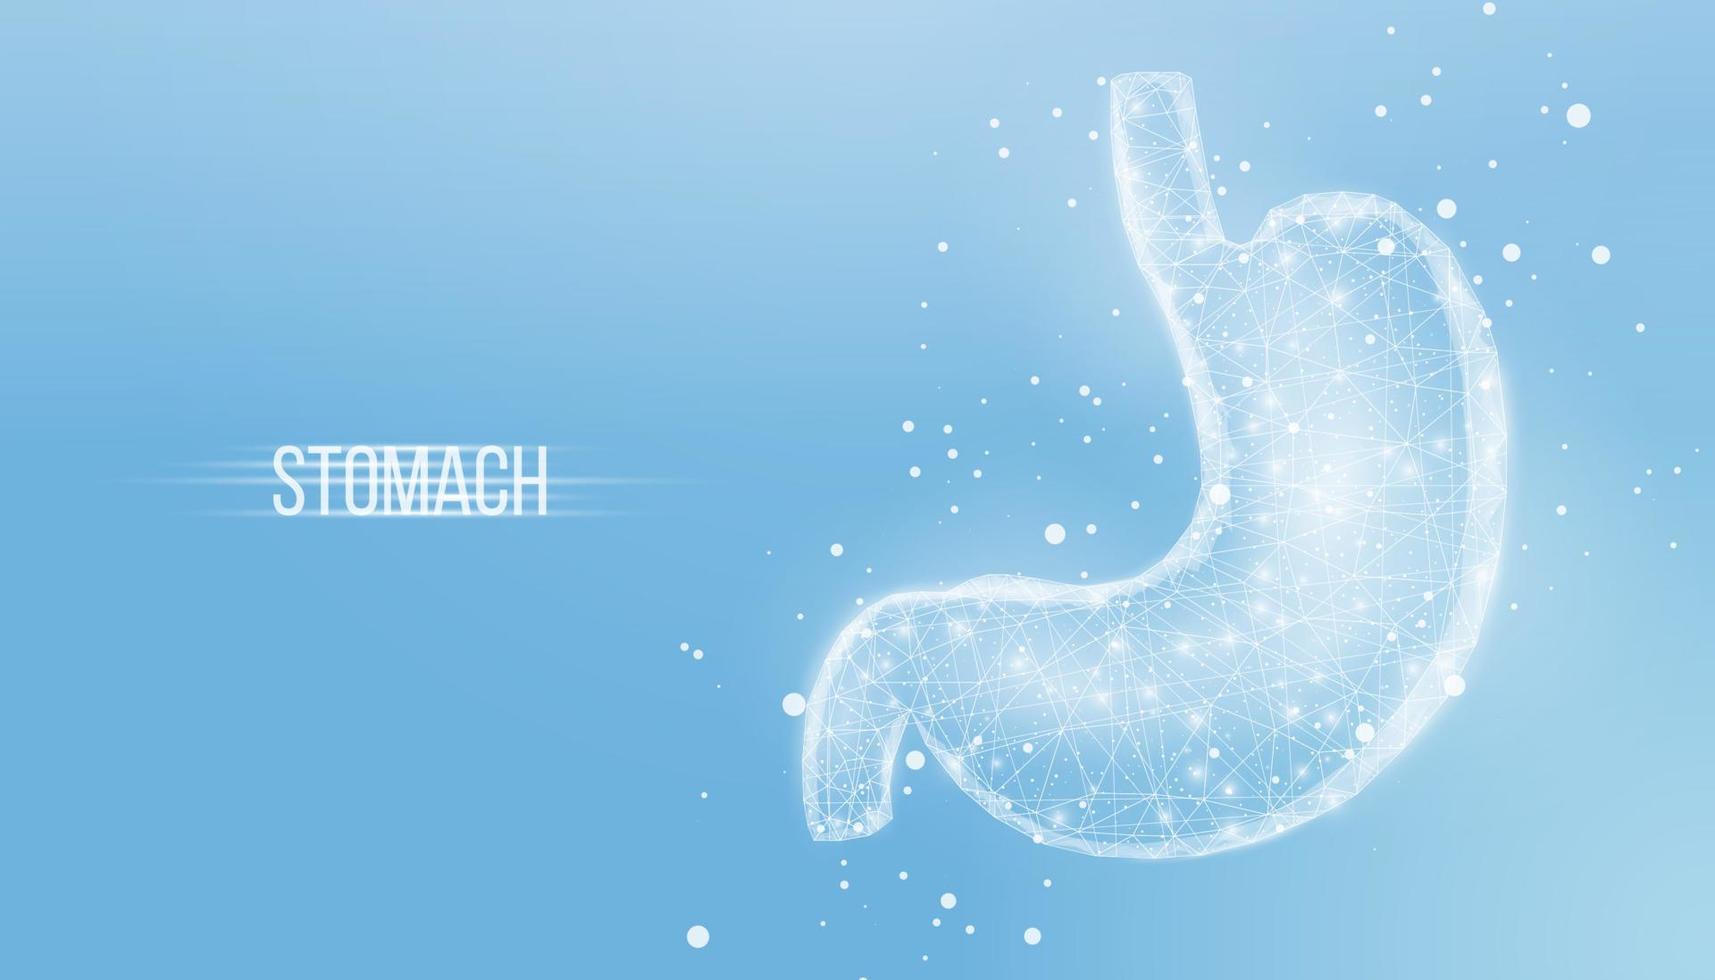 estómago humano estilo polivinílico bajo de la estructura alámbrica. concepto para el tratamiento médico del sistema digestivo. ilustración vectorial 3d moderna abstracta sobre fondo azul. vector